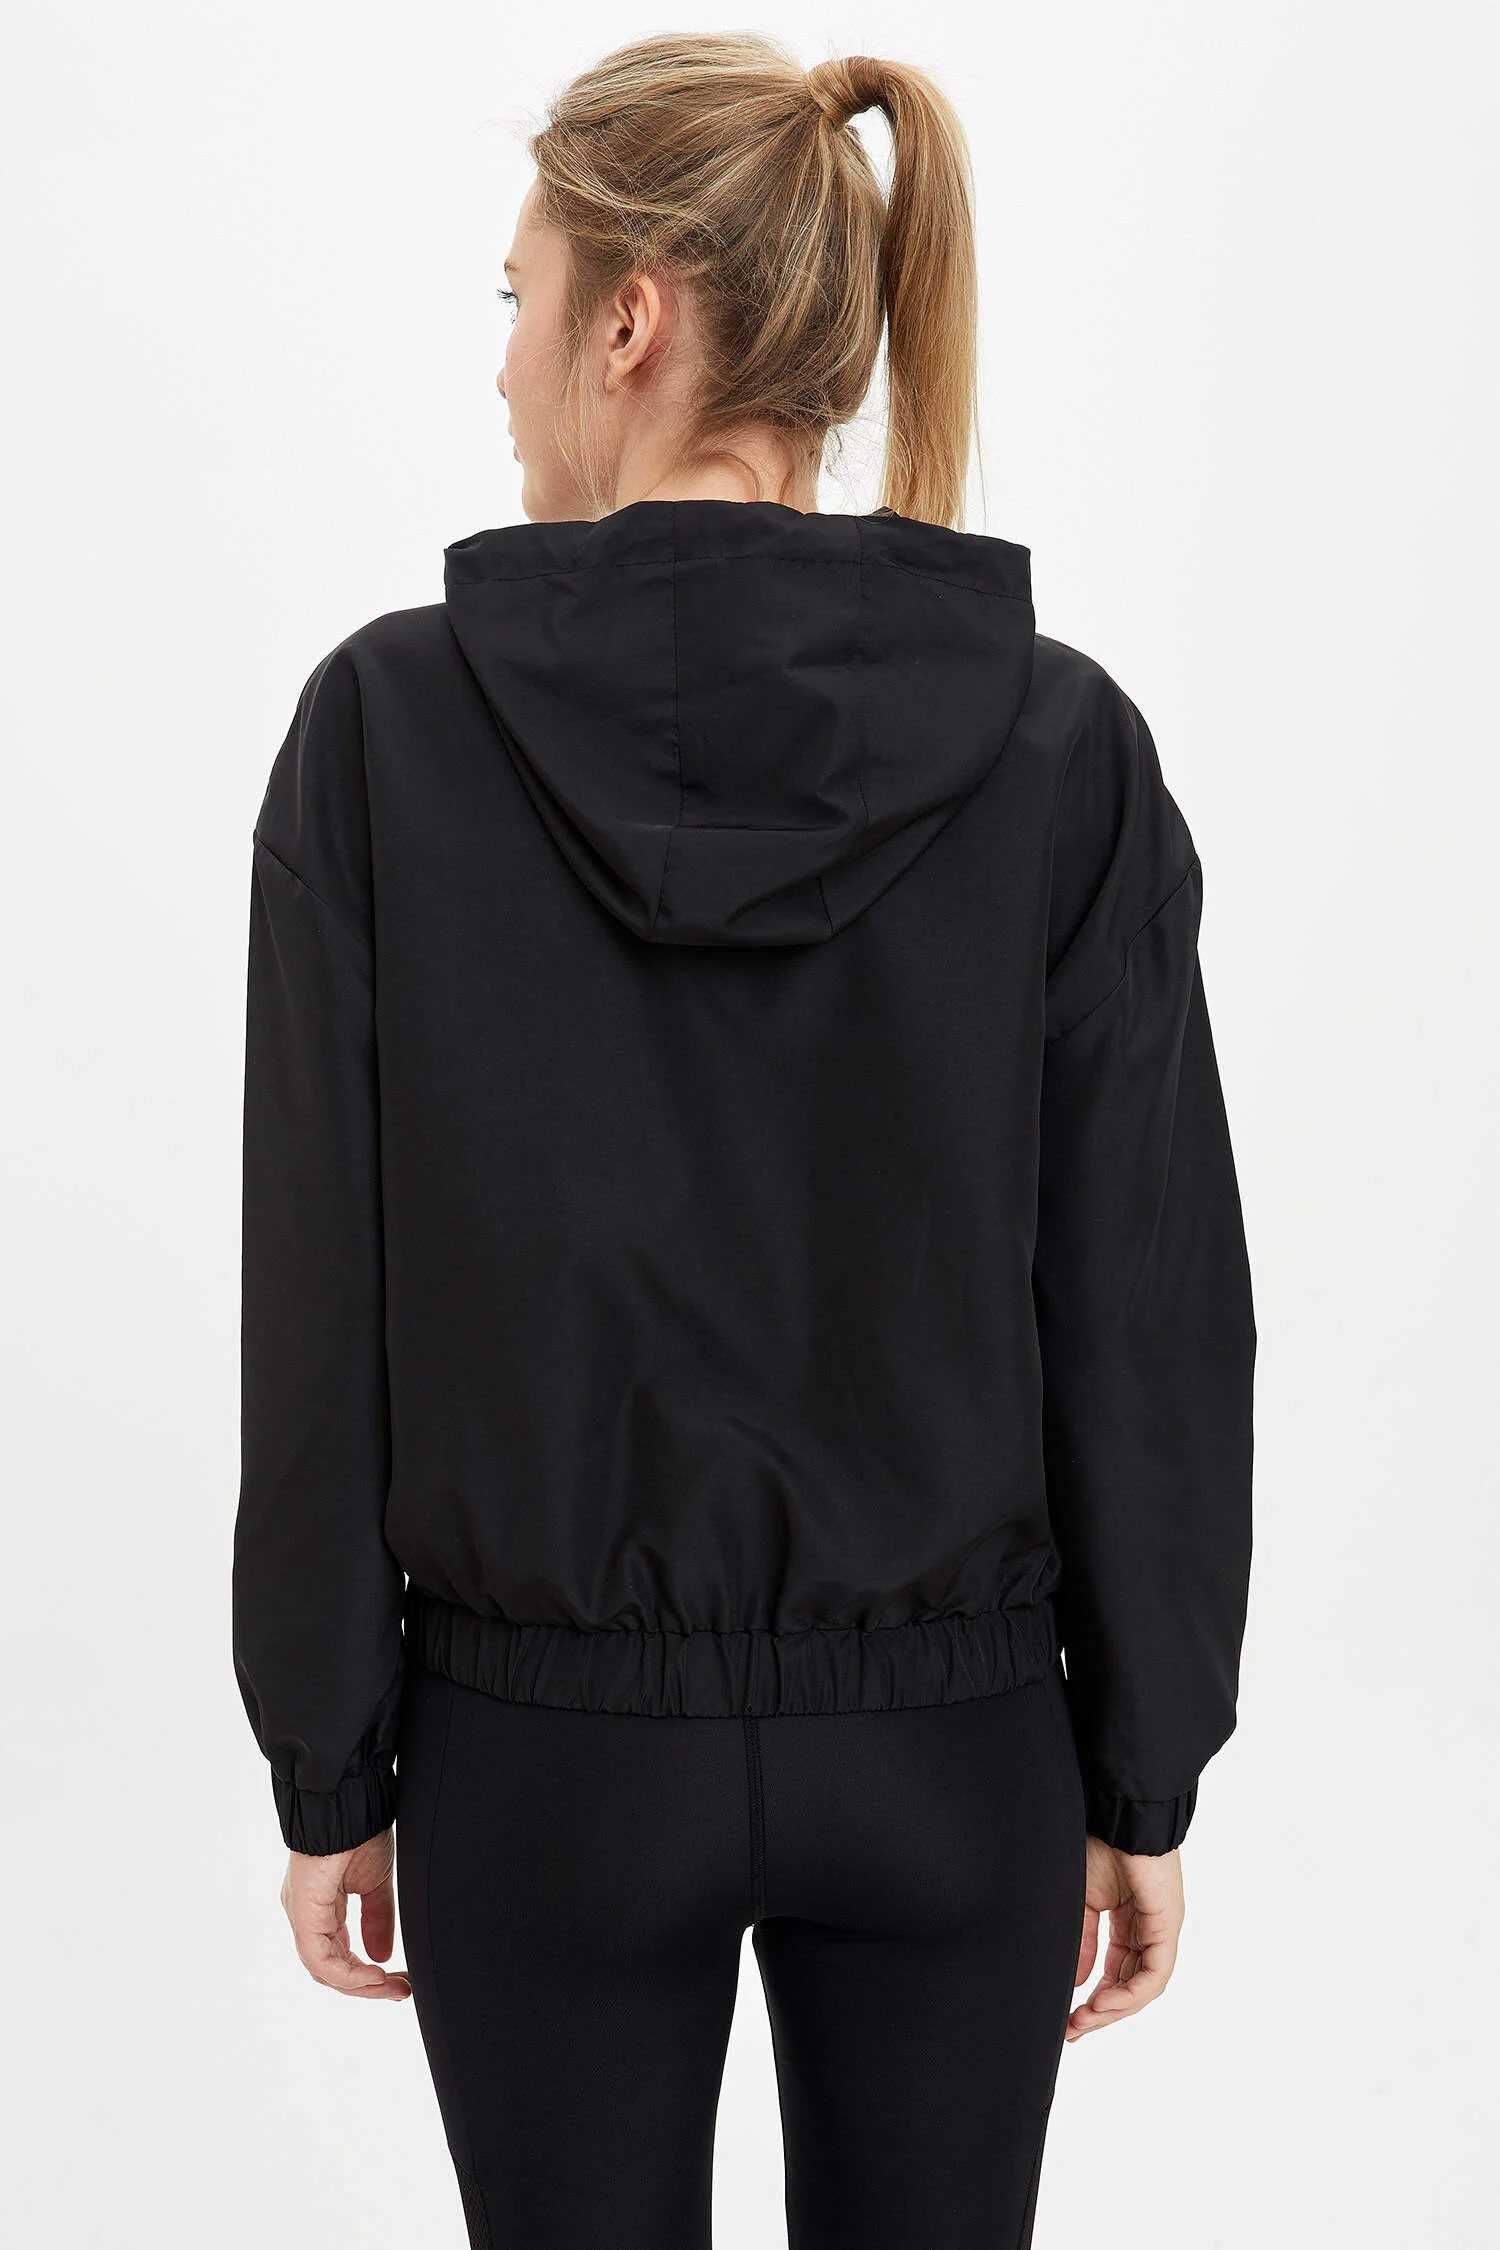 Анорак (куртка, вітровка) спорт чорний DeFacto woman M